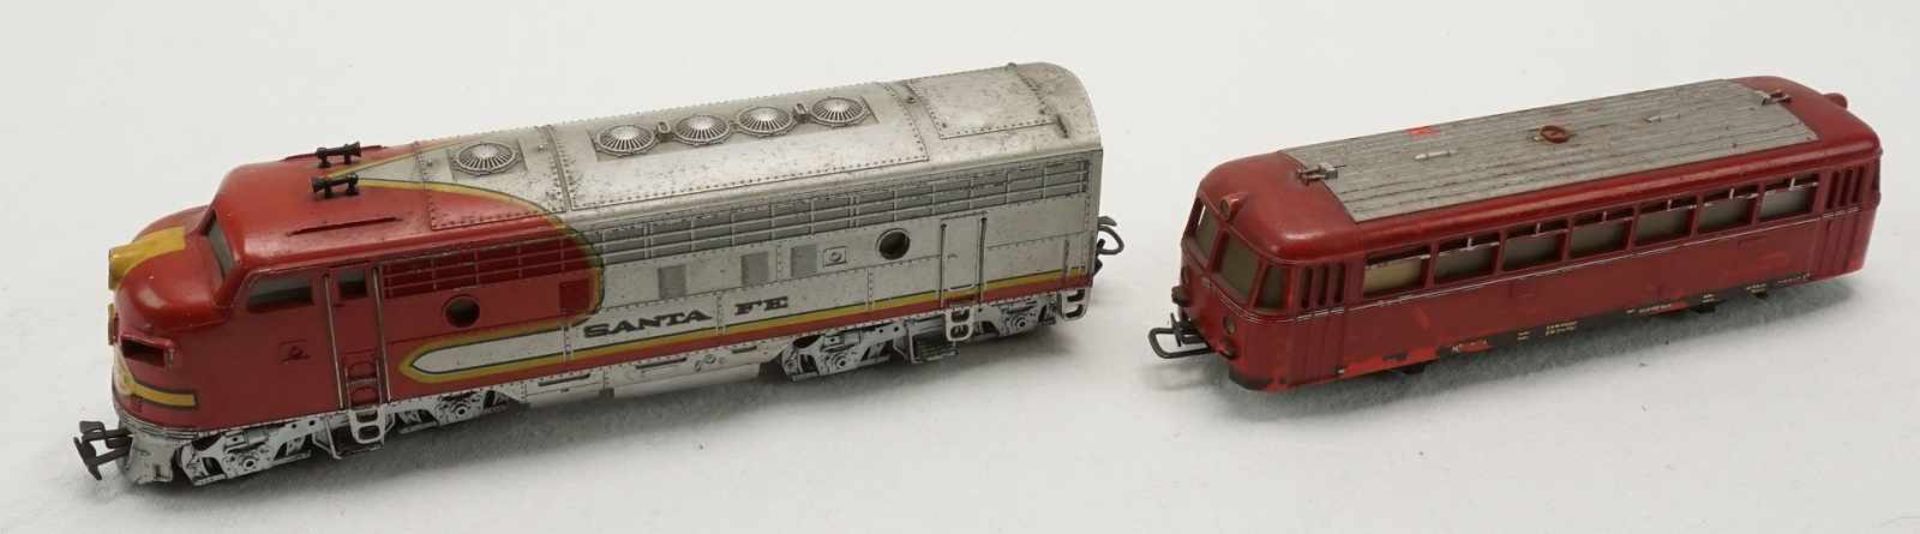 Vier Märklin Diesellokomotiven, Spur H01) Märklin Santa Fe, Spur H0, um 1960, Gusseisen, - Bild 4 aus 4